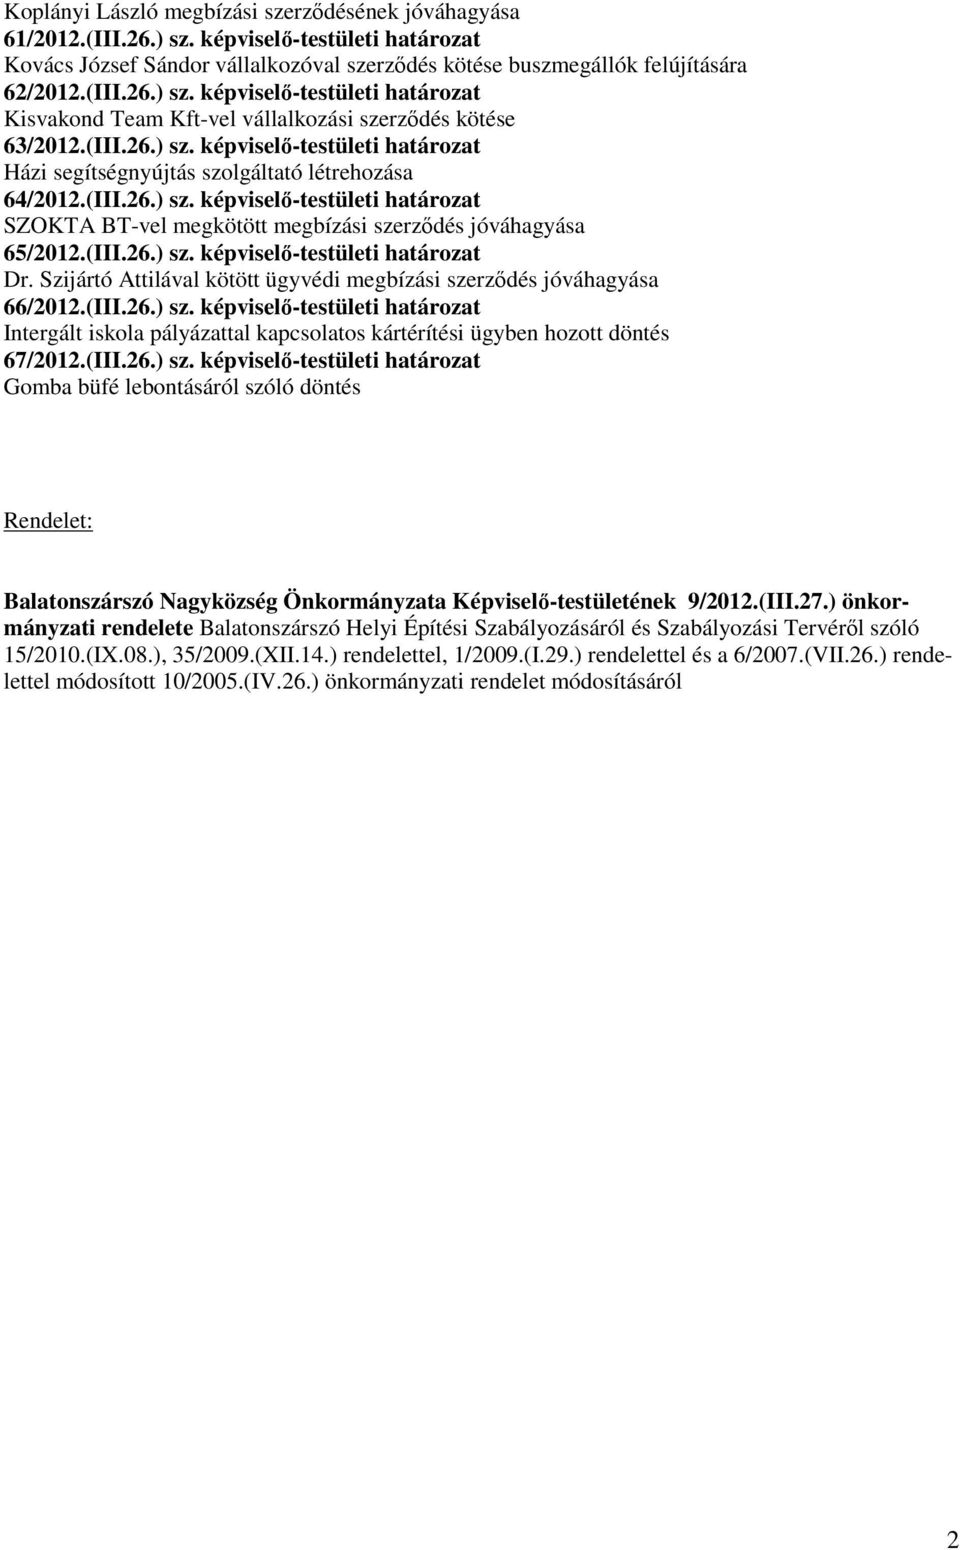 (III.26.) sz. képviselı-testületi határozat Dr. Szijártó Attilával kötött ügyvédi megbízási szerzıdés jóváhagyása 66/2012.(III.26.) sz. képviselı-testületi határozat Intergált iskola pályázattal kapcsolatos kártérítési ügyben hozott döntés 67/2012.